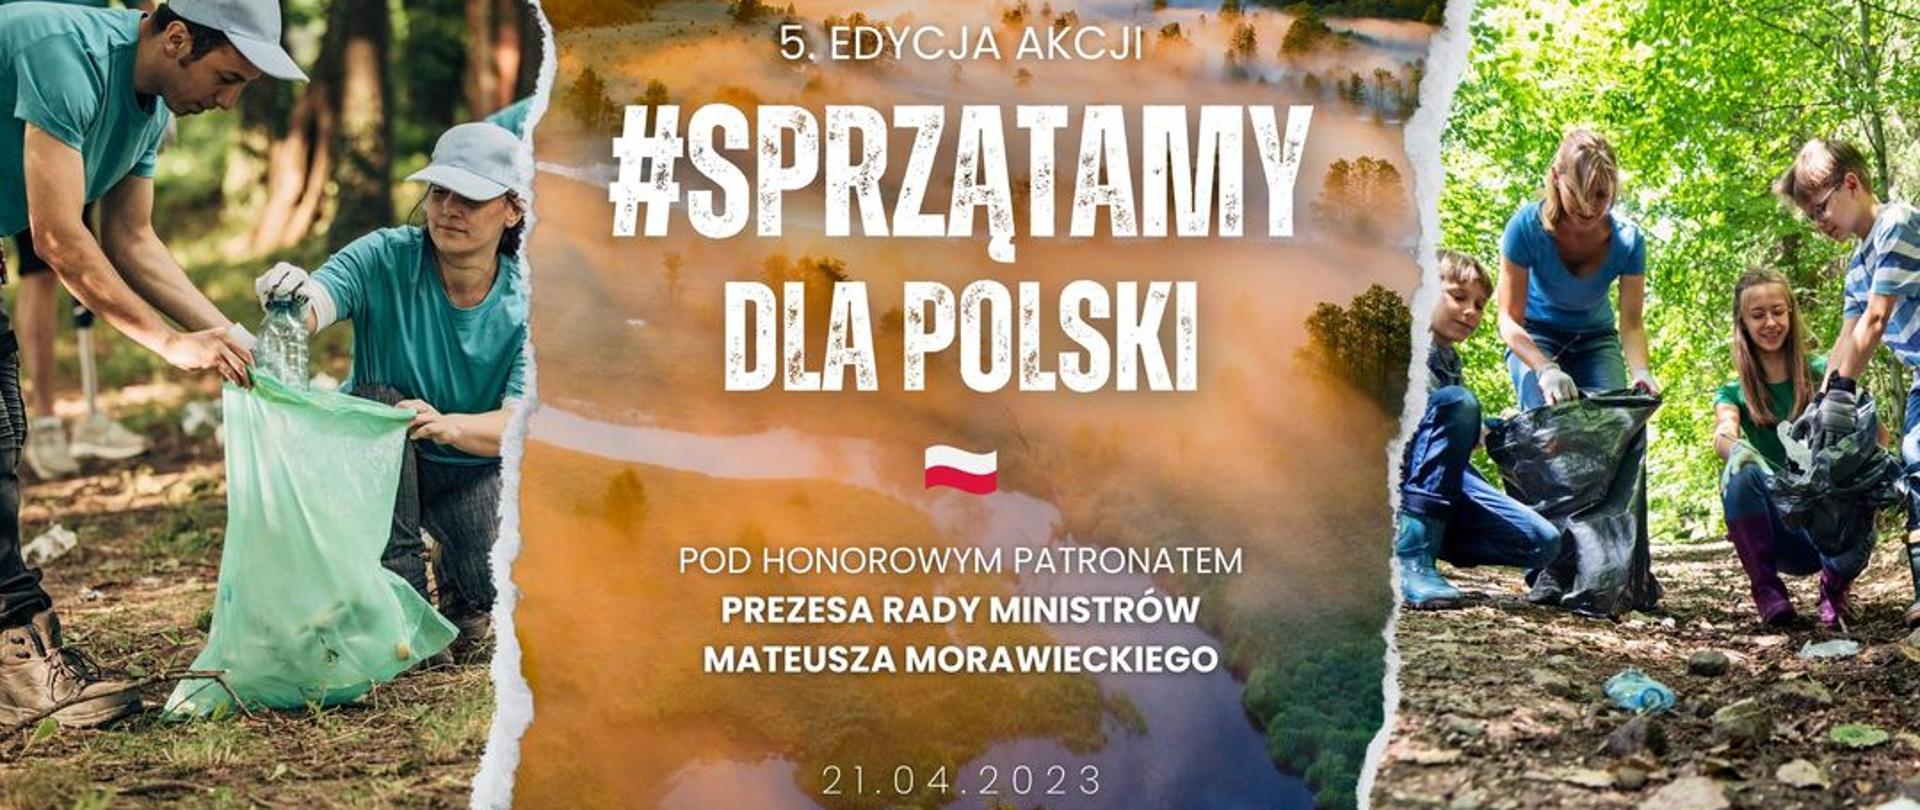 Plakat informacyjny 5. edycji akcji Sprzątajmy dla Polski